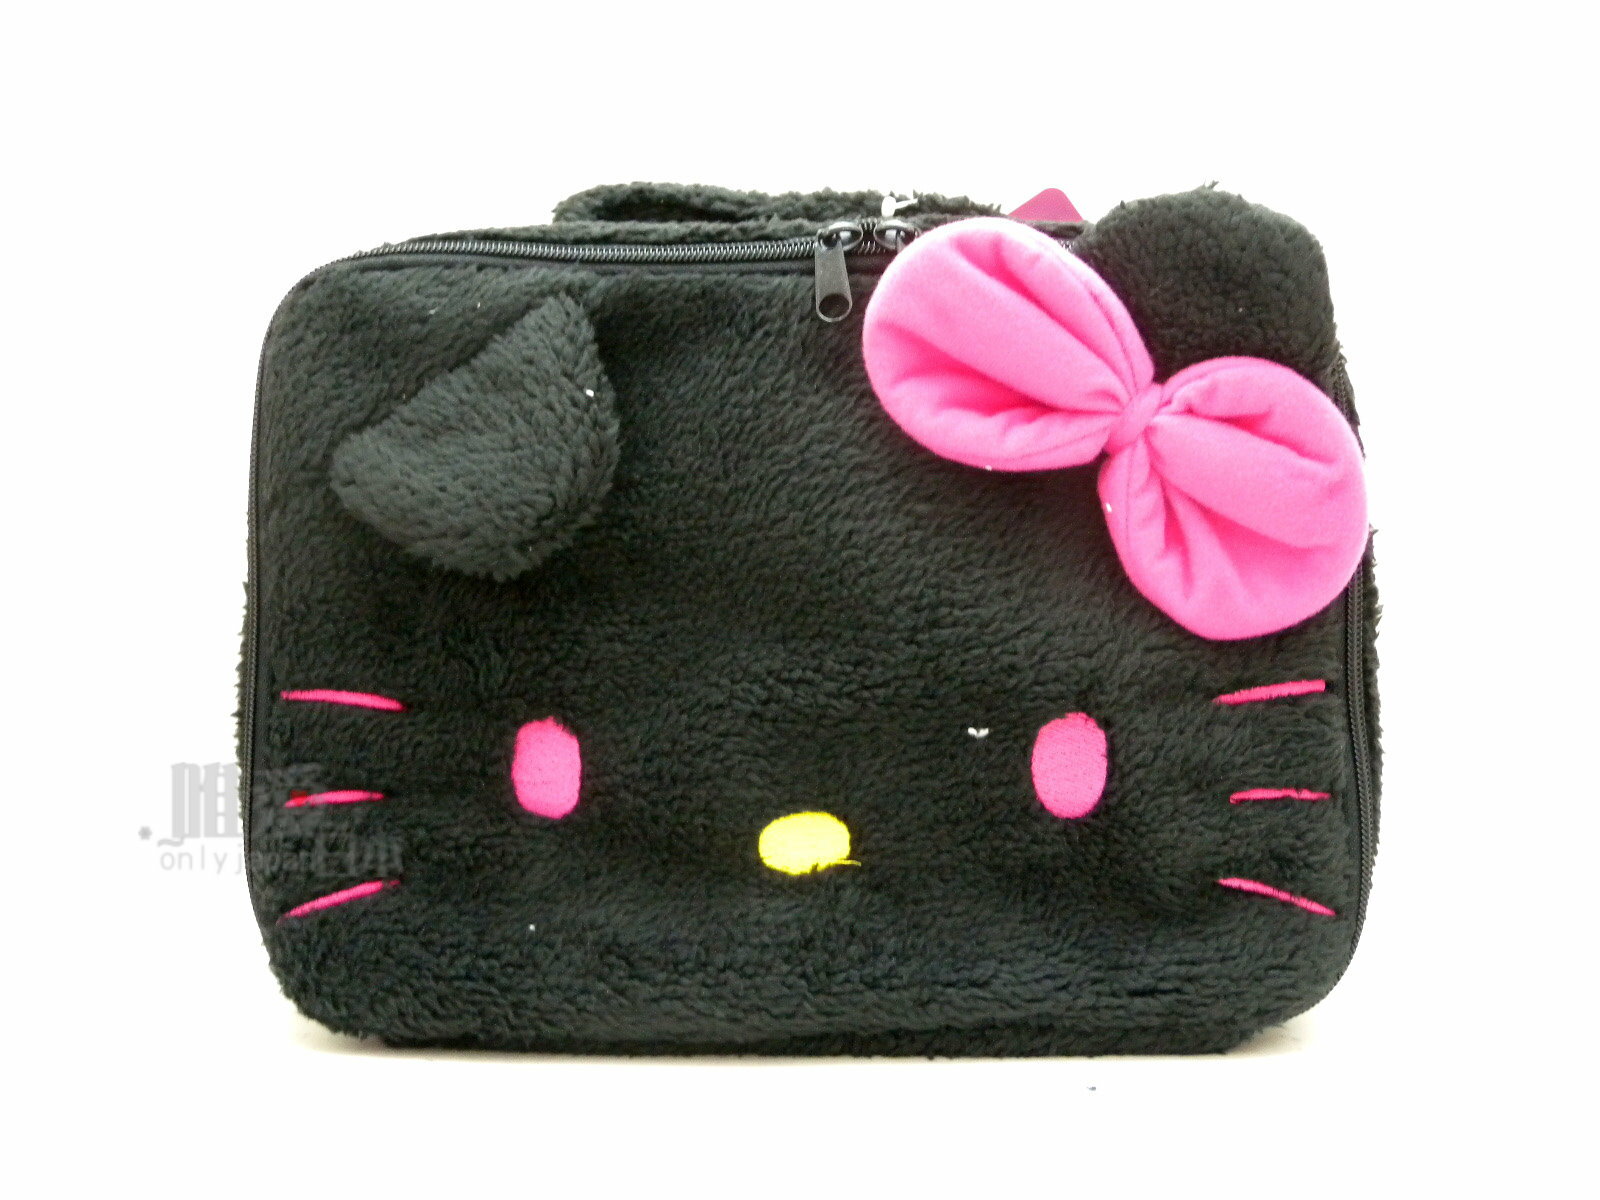 【唯愛日本】14041500007 絨毛手提化妝包-大臉黑 三麗鷗 Hello Kitty 凱蒂貓 化妝箱 日本景品